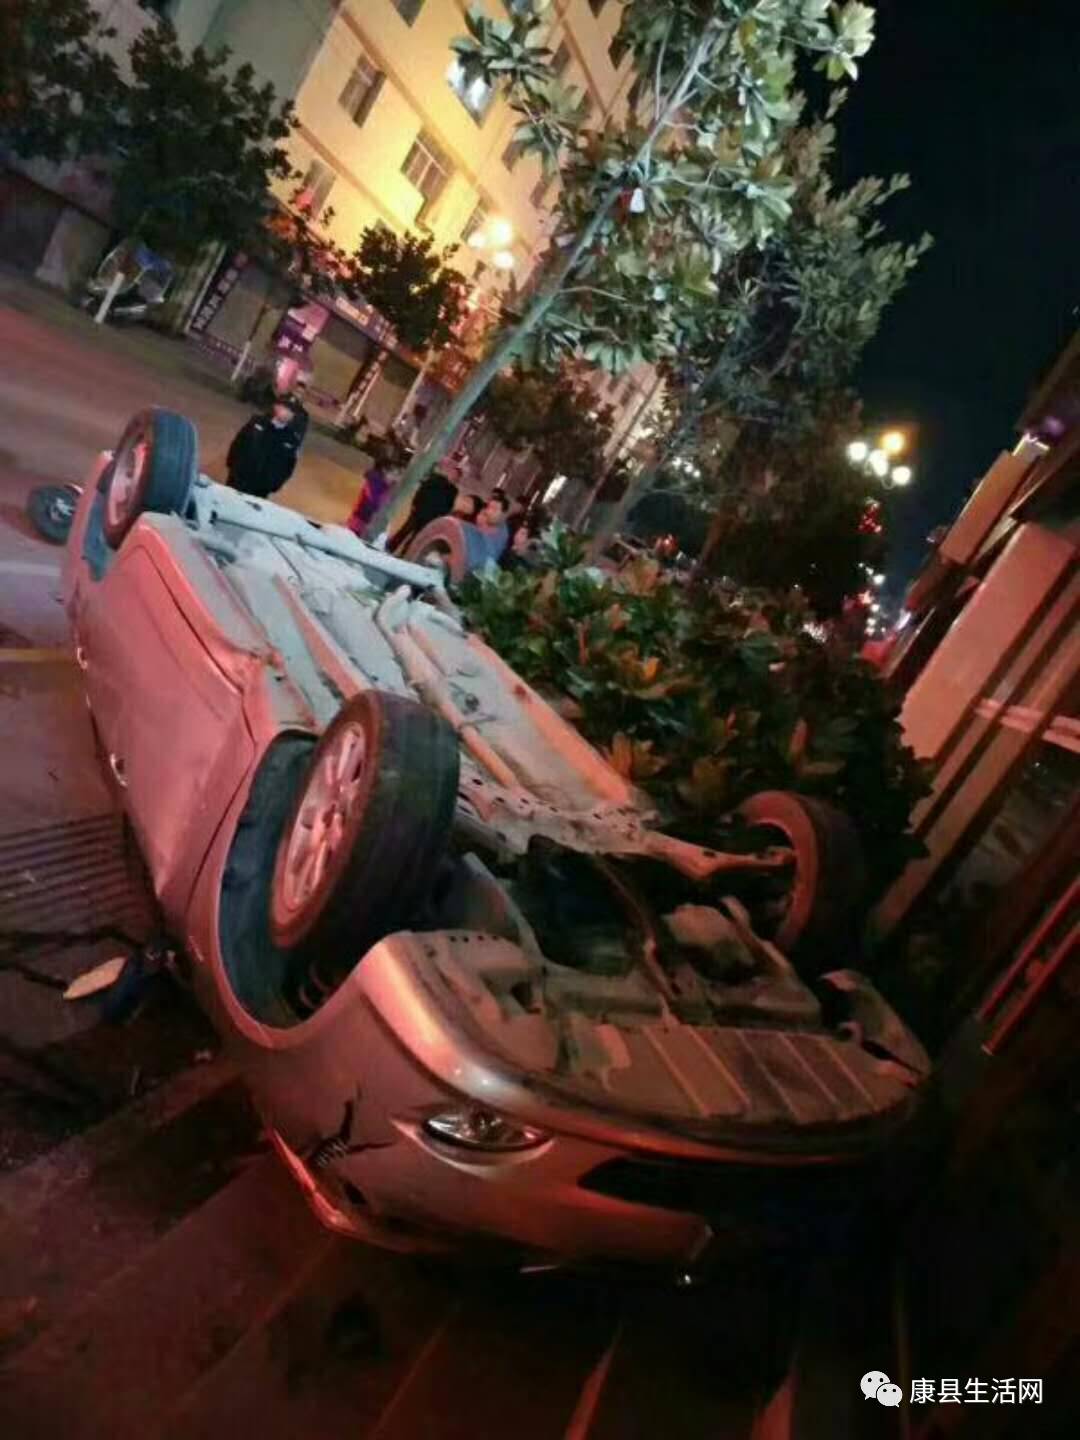 昨天晚上的车祸现场图片